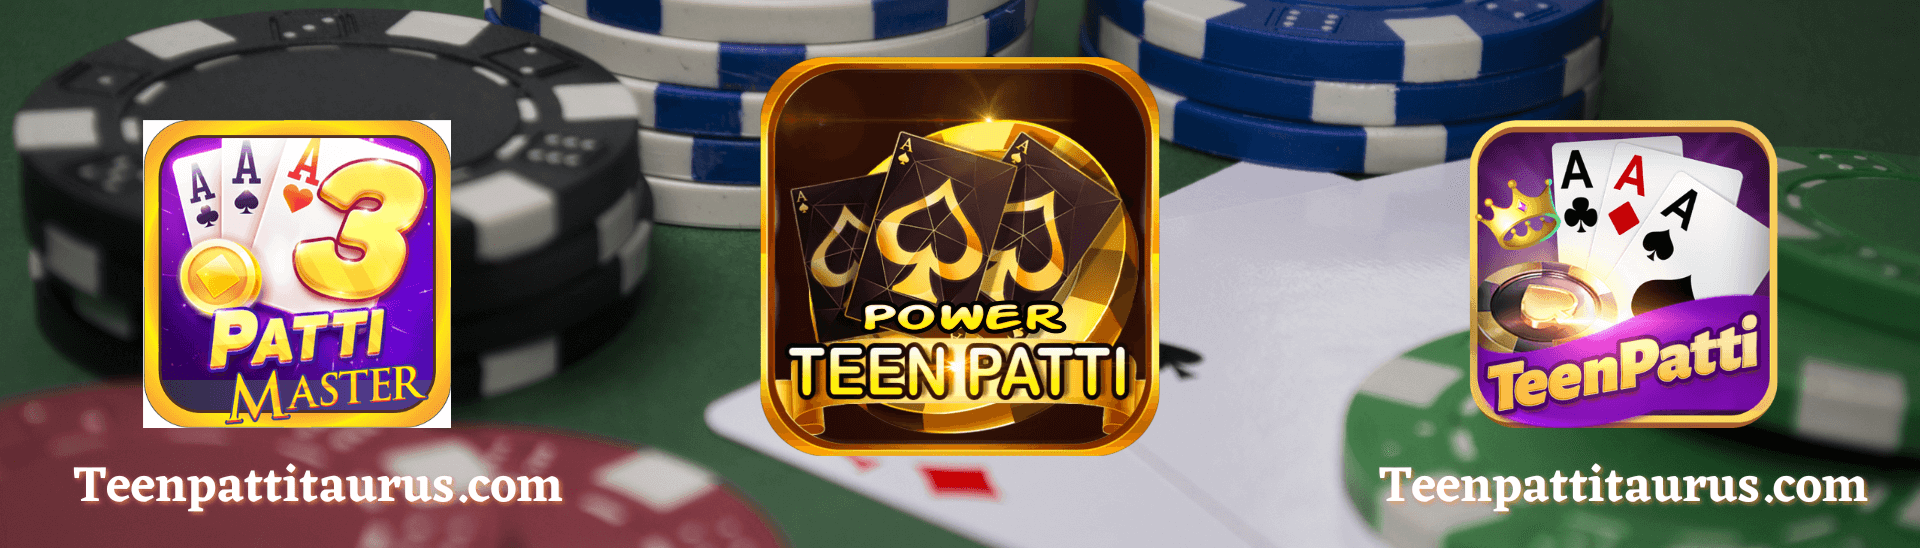 Teen-Patti-Master-Teen-Patti-Gold-Teen-Patti-Power